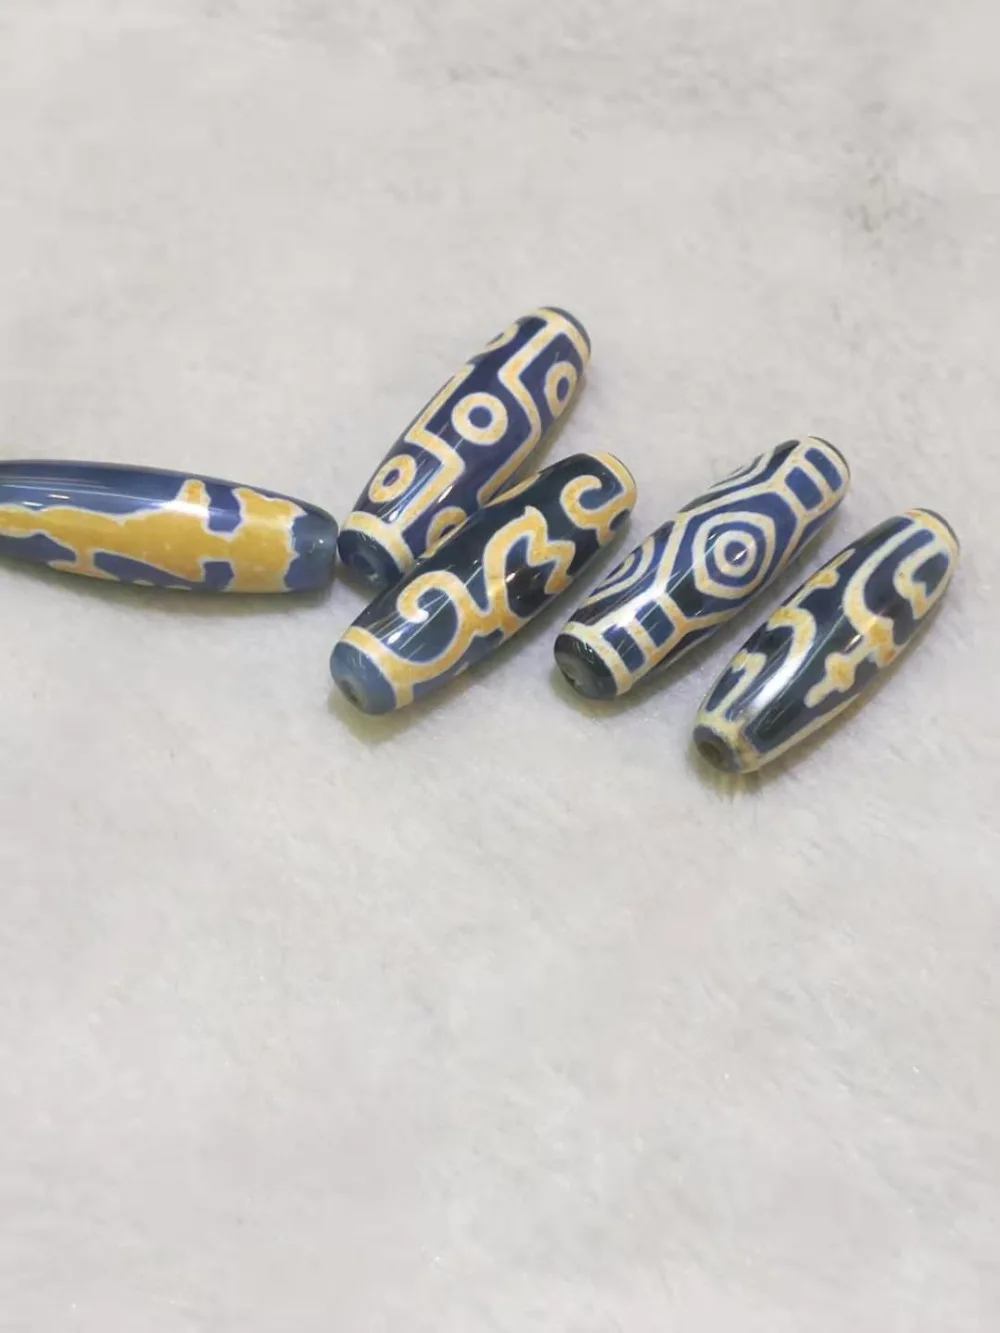 Синий дзи бусины натуральный агат камень 12 мм* 40 мм бусины амулет сокровище коллекционные для изготовления ювелирных изделий